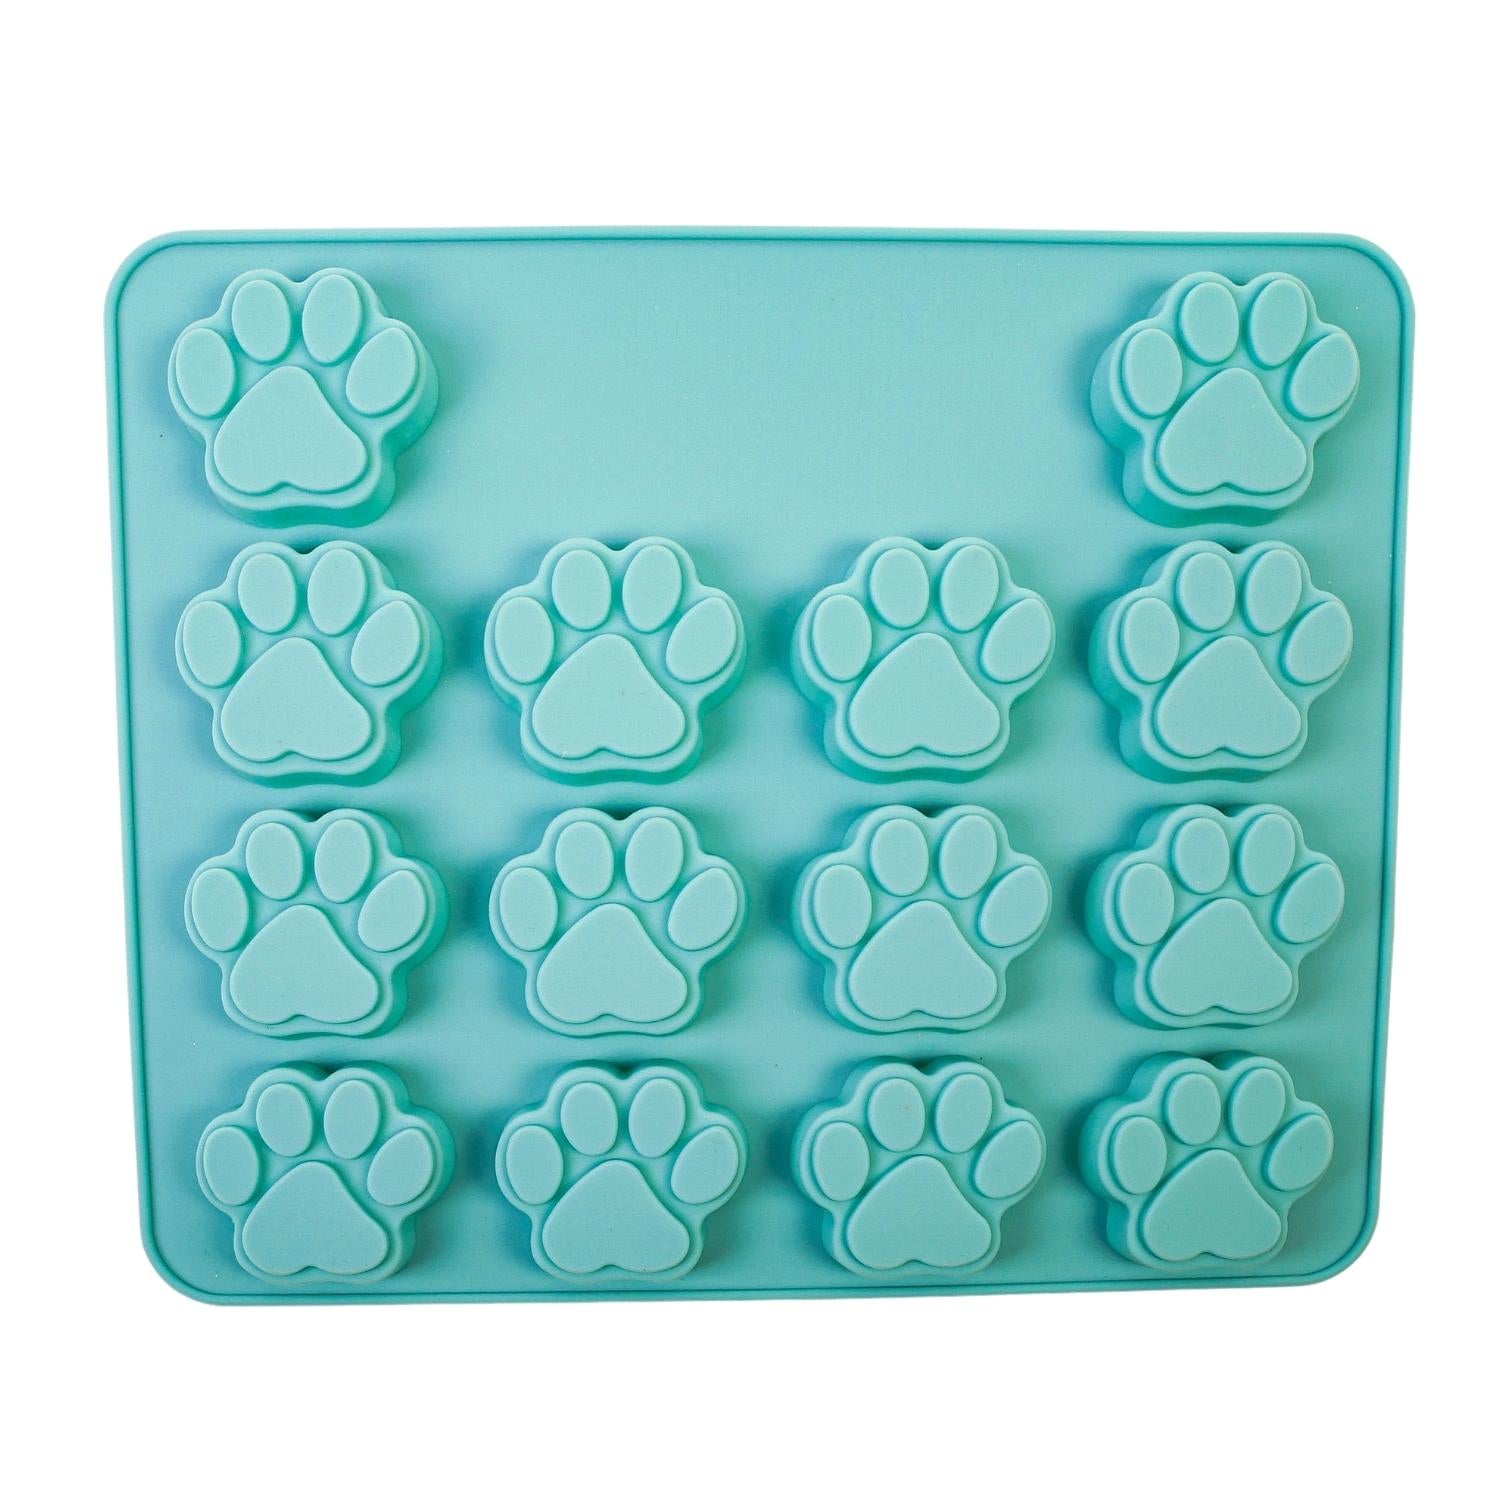 Paw-shaped Ice Cube Tray Mold